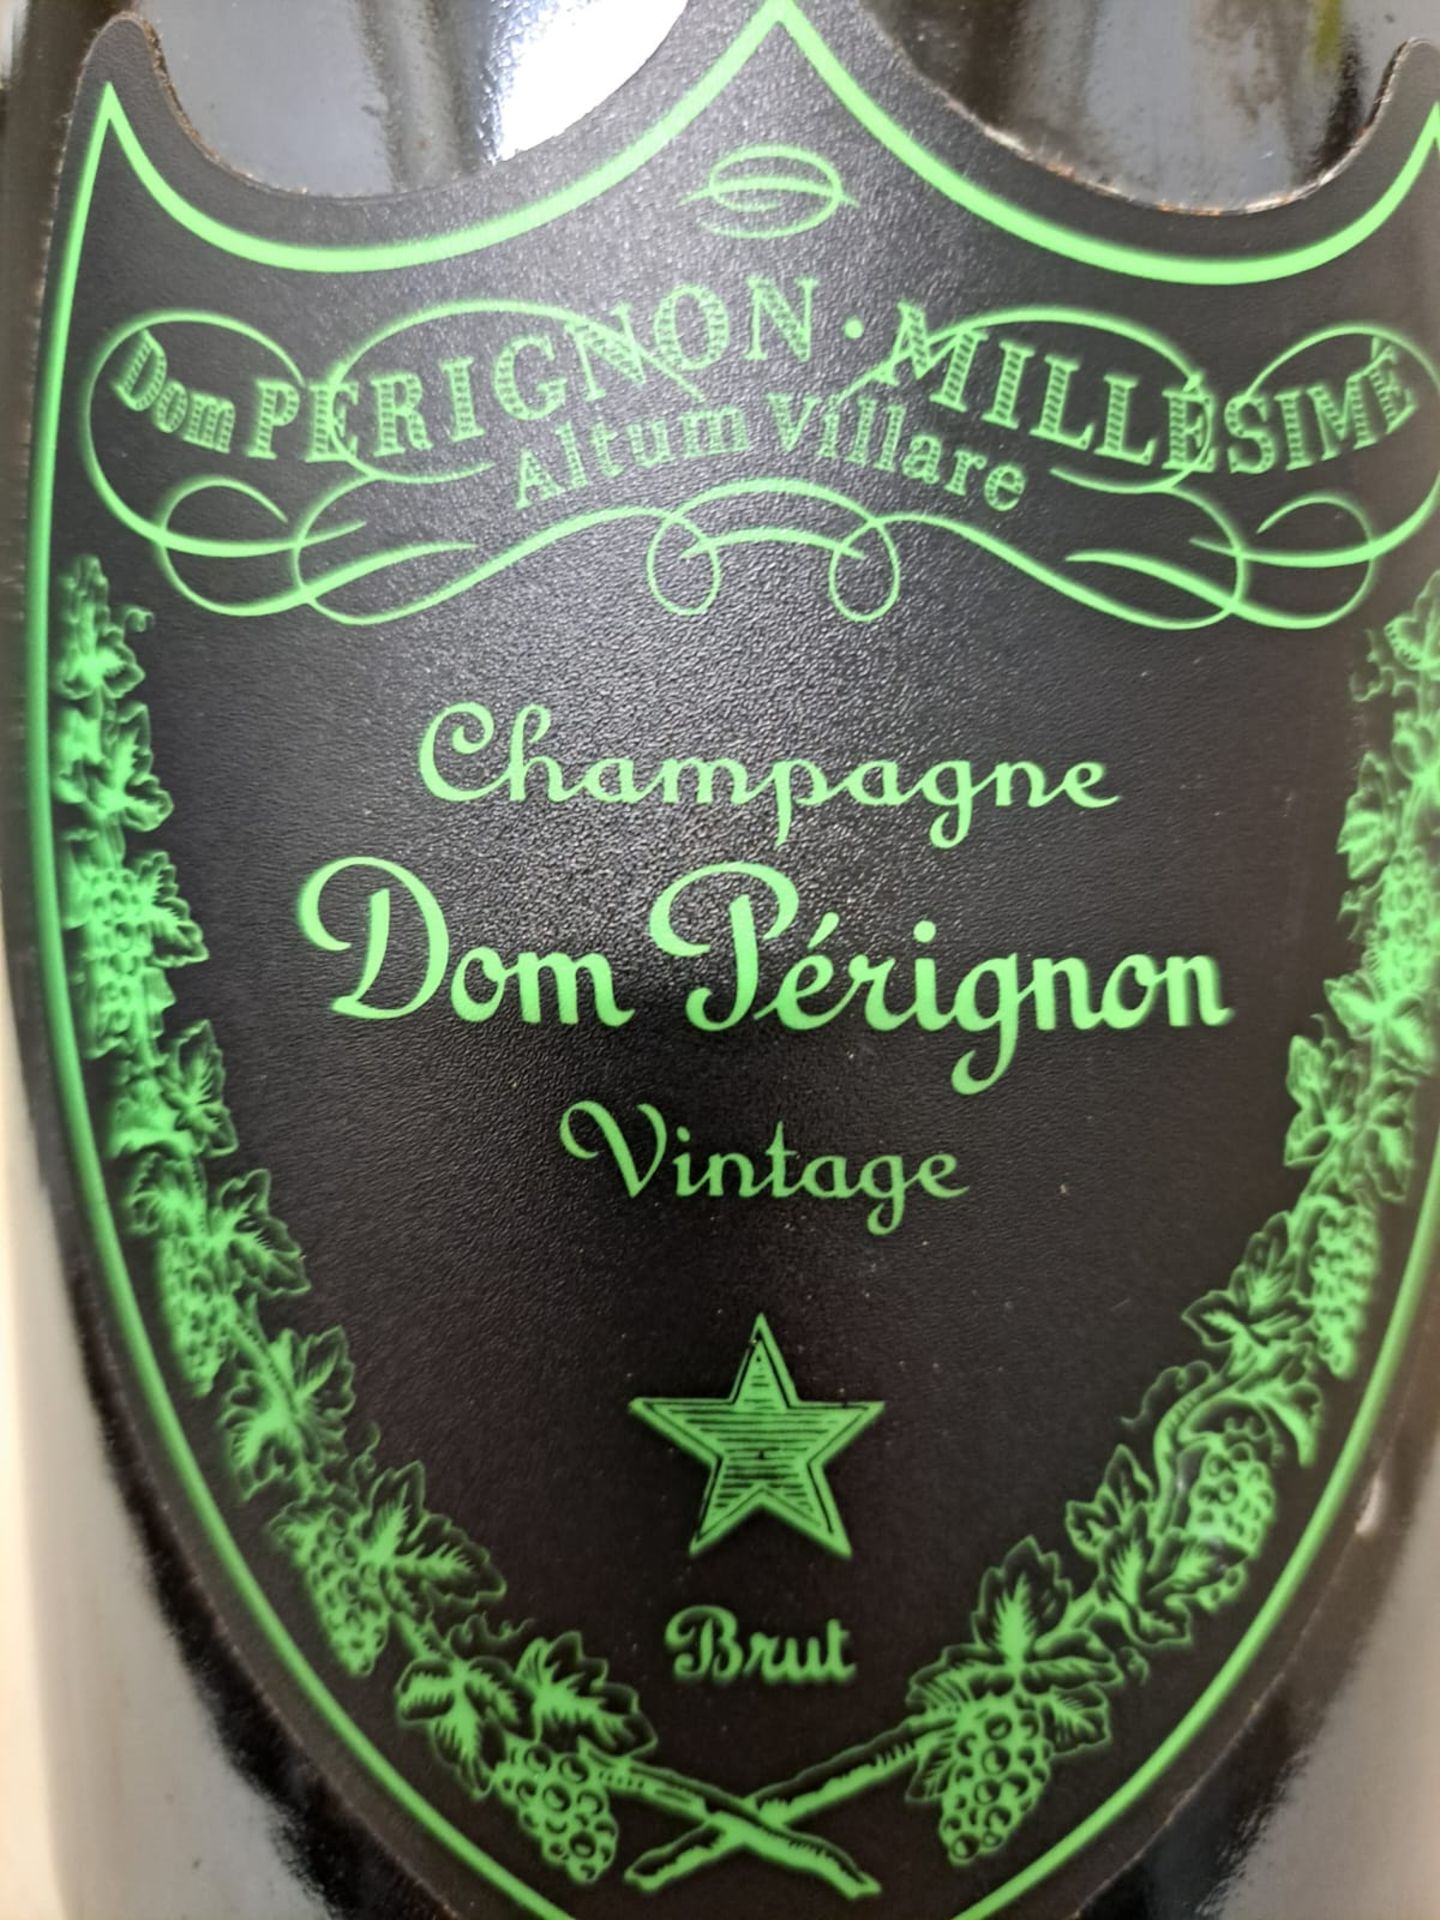 1 x Magnum of 2009 Dom Perignon Millesime Champagne Vintage Brut Luminous Label - Retail Price £ - Image 4 of 5